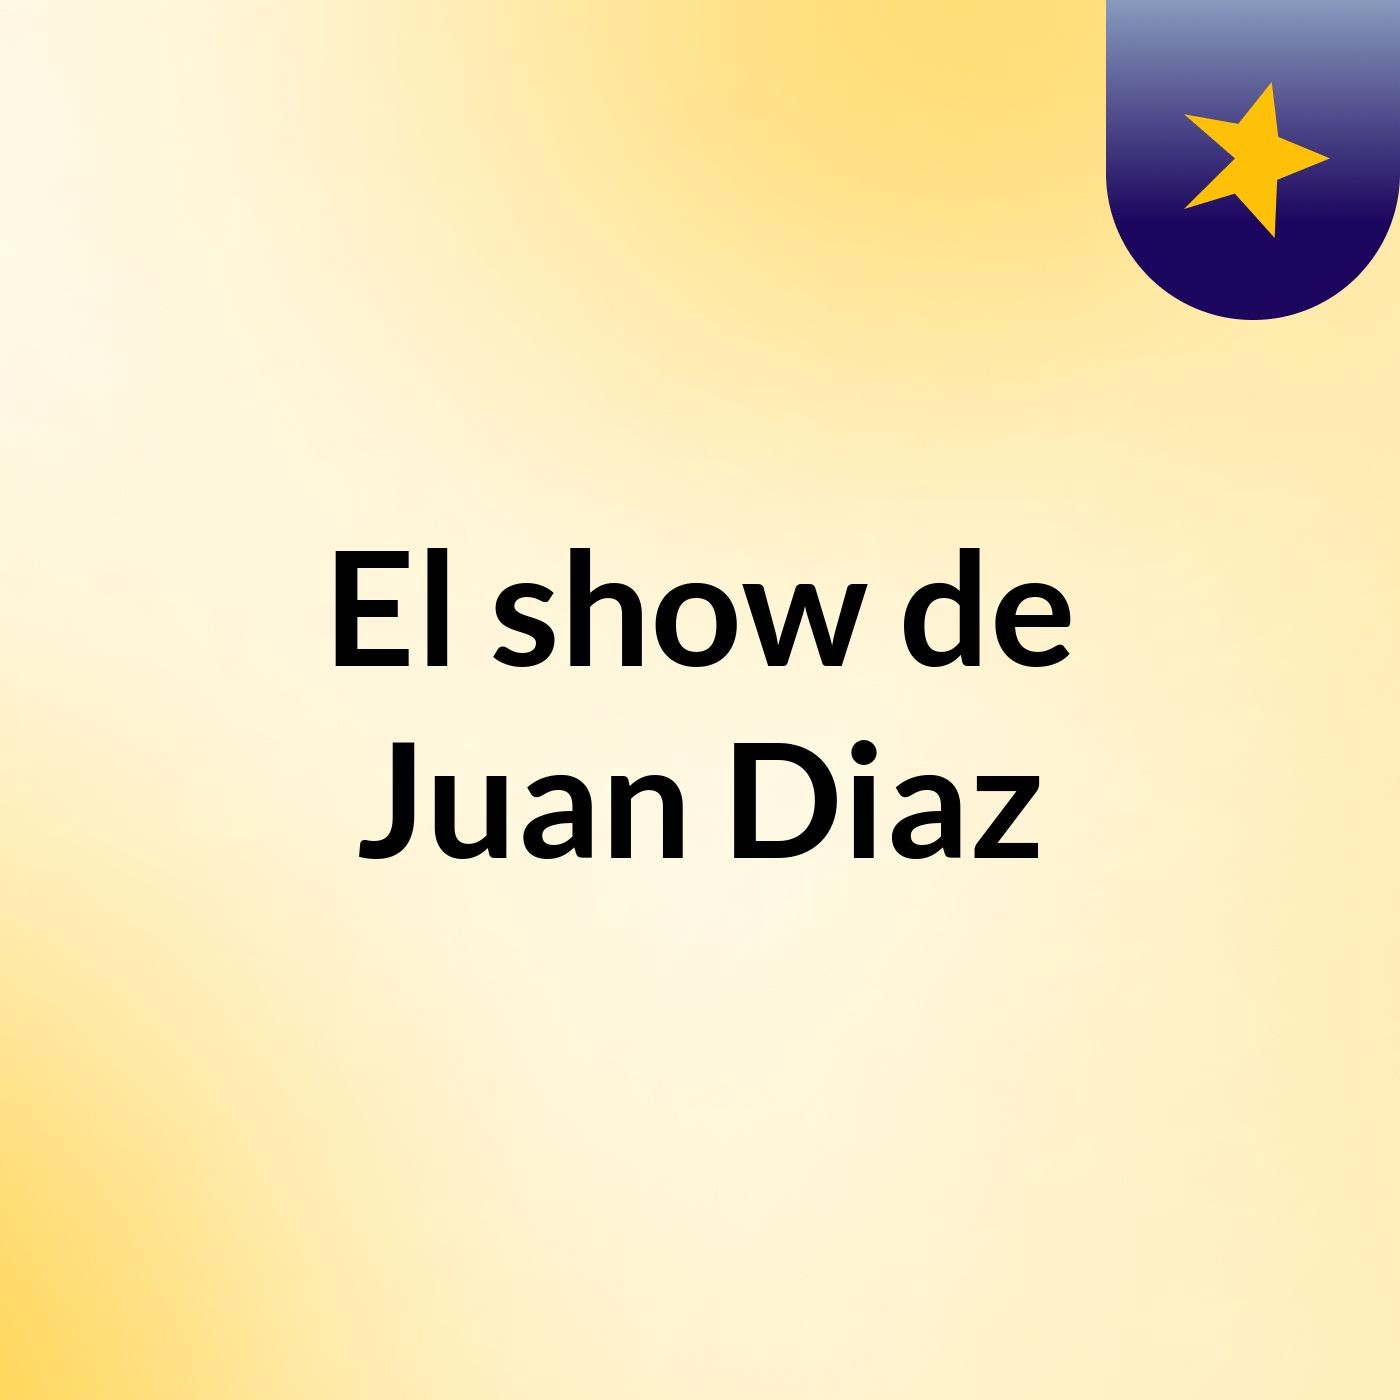 El show de Juan Diaz